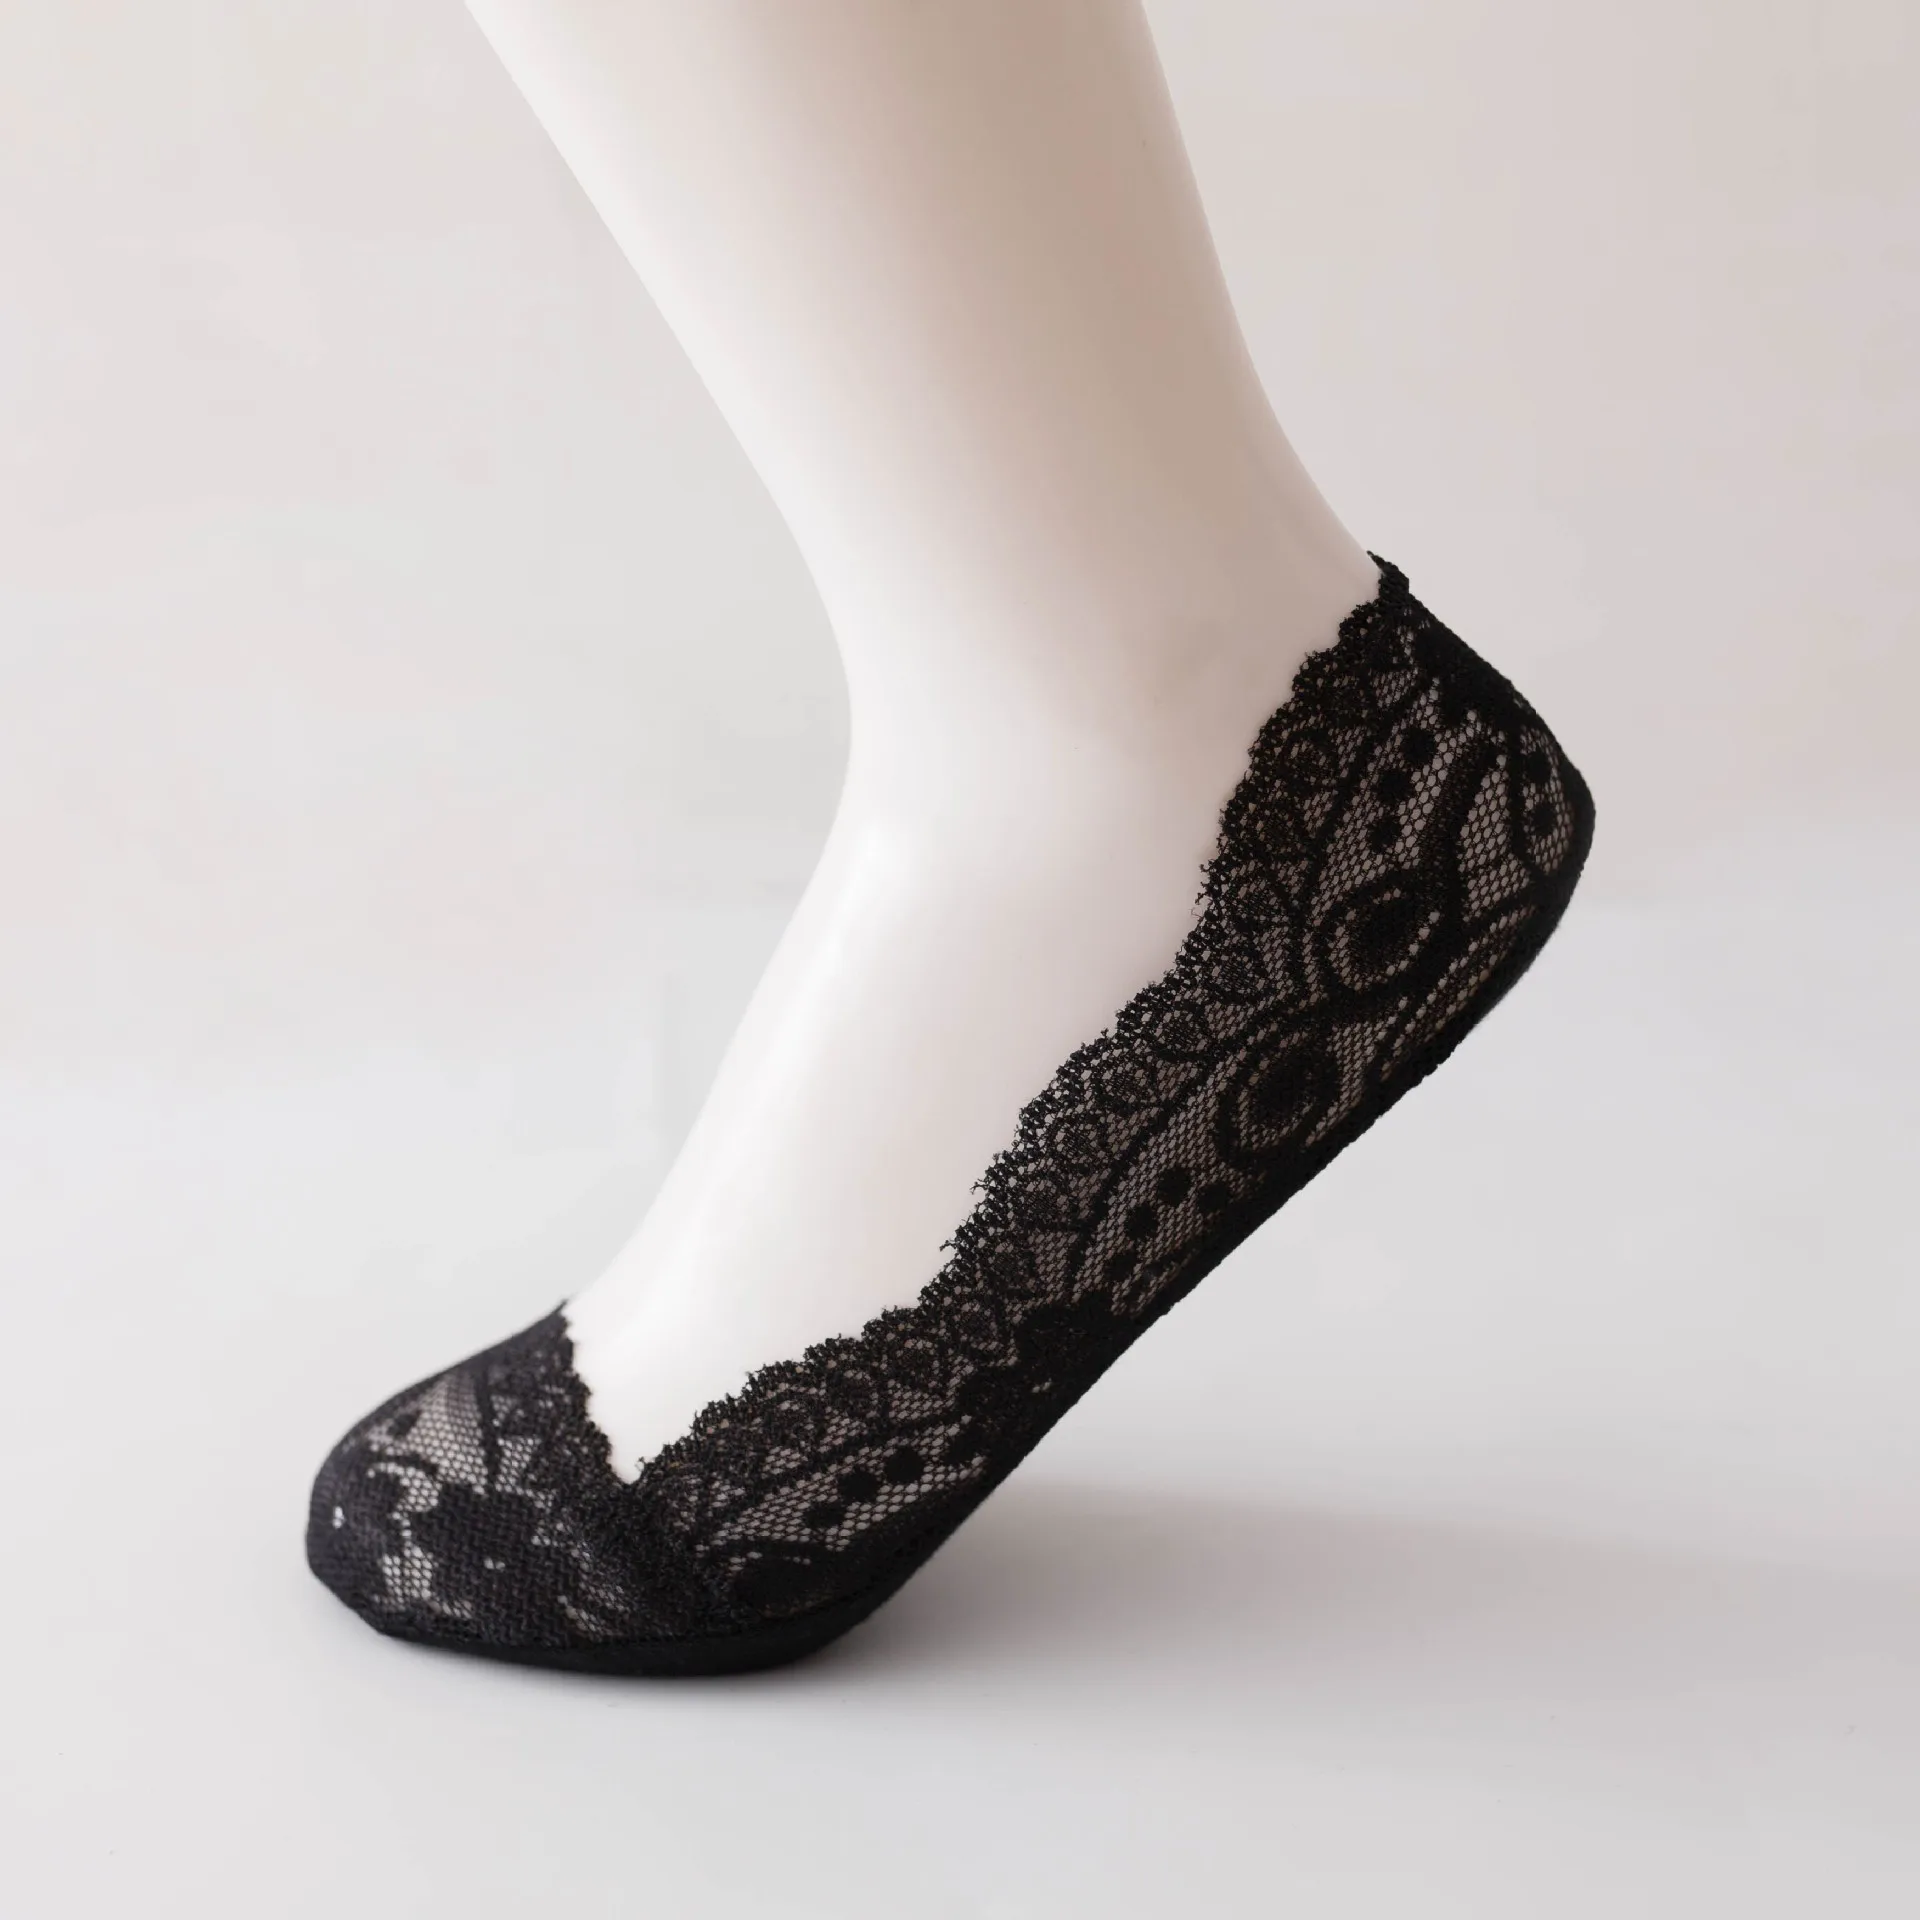 20 пара/лот; летние хлопковые женские короткие носки; модные носки; тапочки для девочек; удобные повседневные женские носки на высоком каблуке - Цвет: (1) black 20 pair